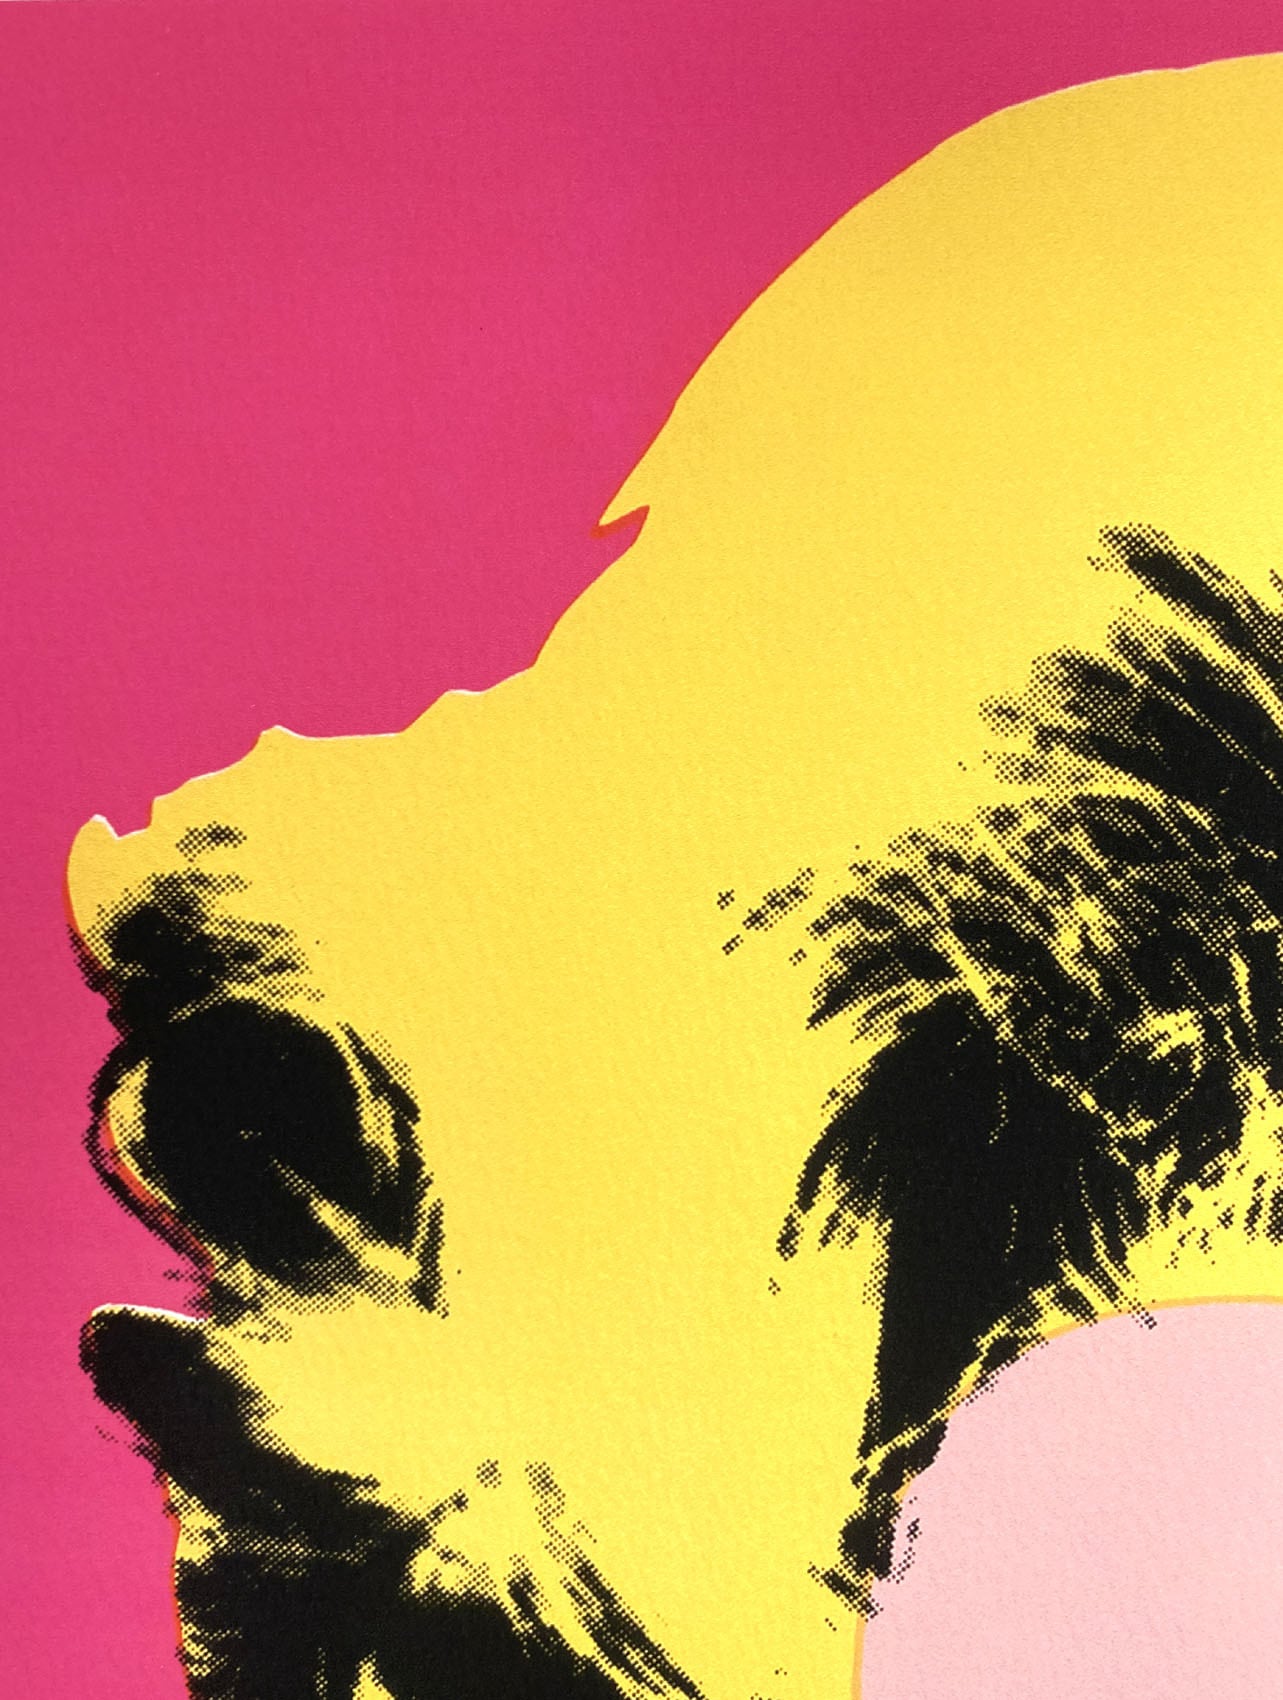 アンディ・ウォーホル「マリリン・モンロー(ホットピンク)1967」展示用フック付大型サイズジークレ ポップアート 絵画 Andy Warhol